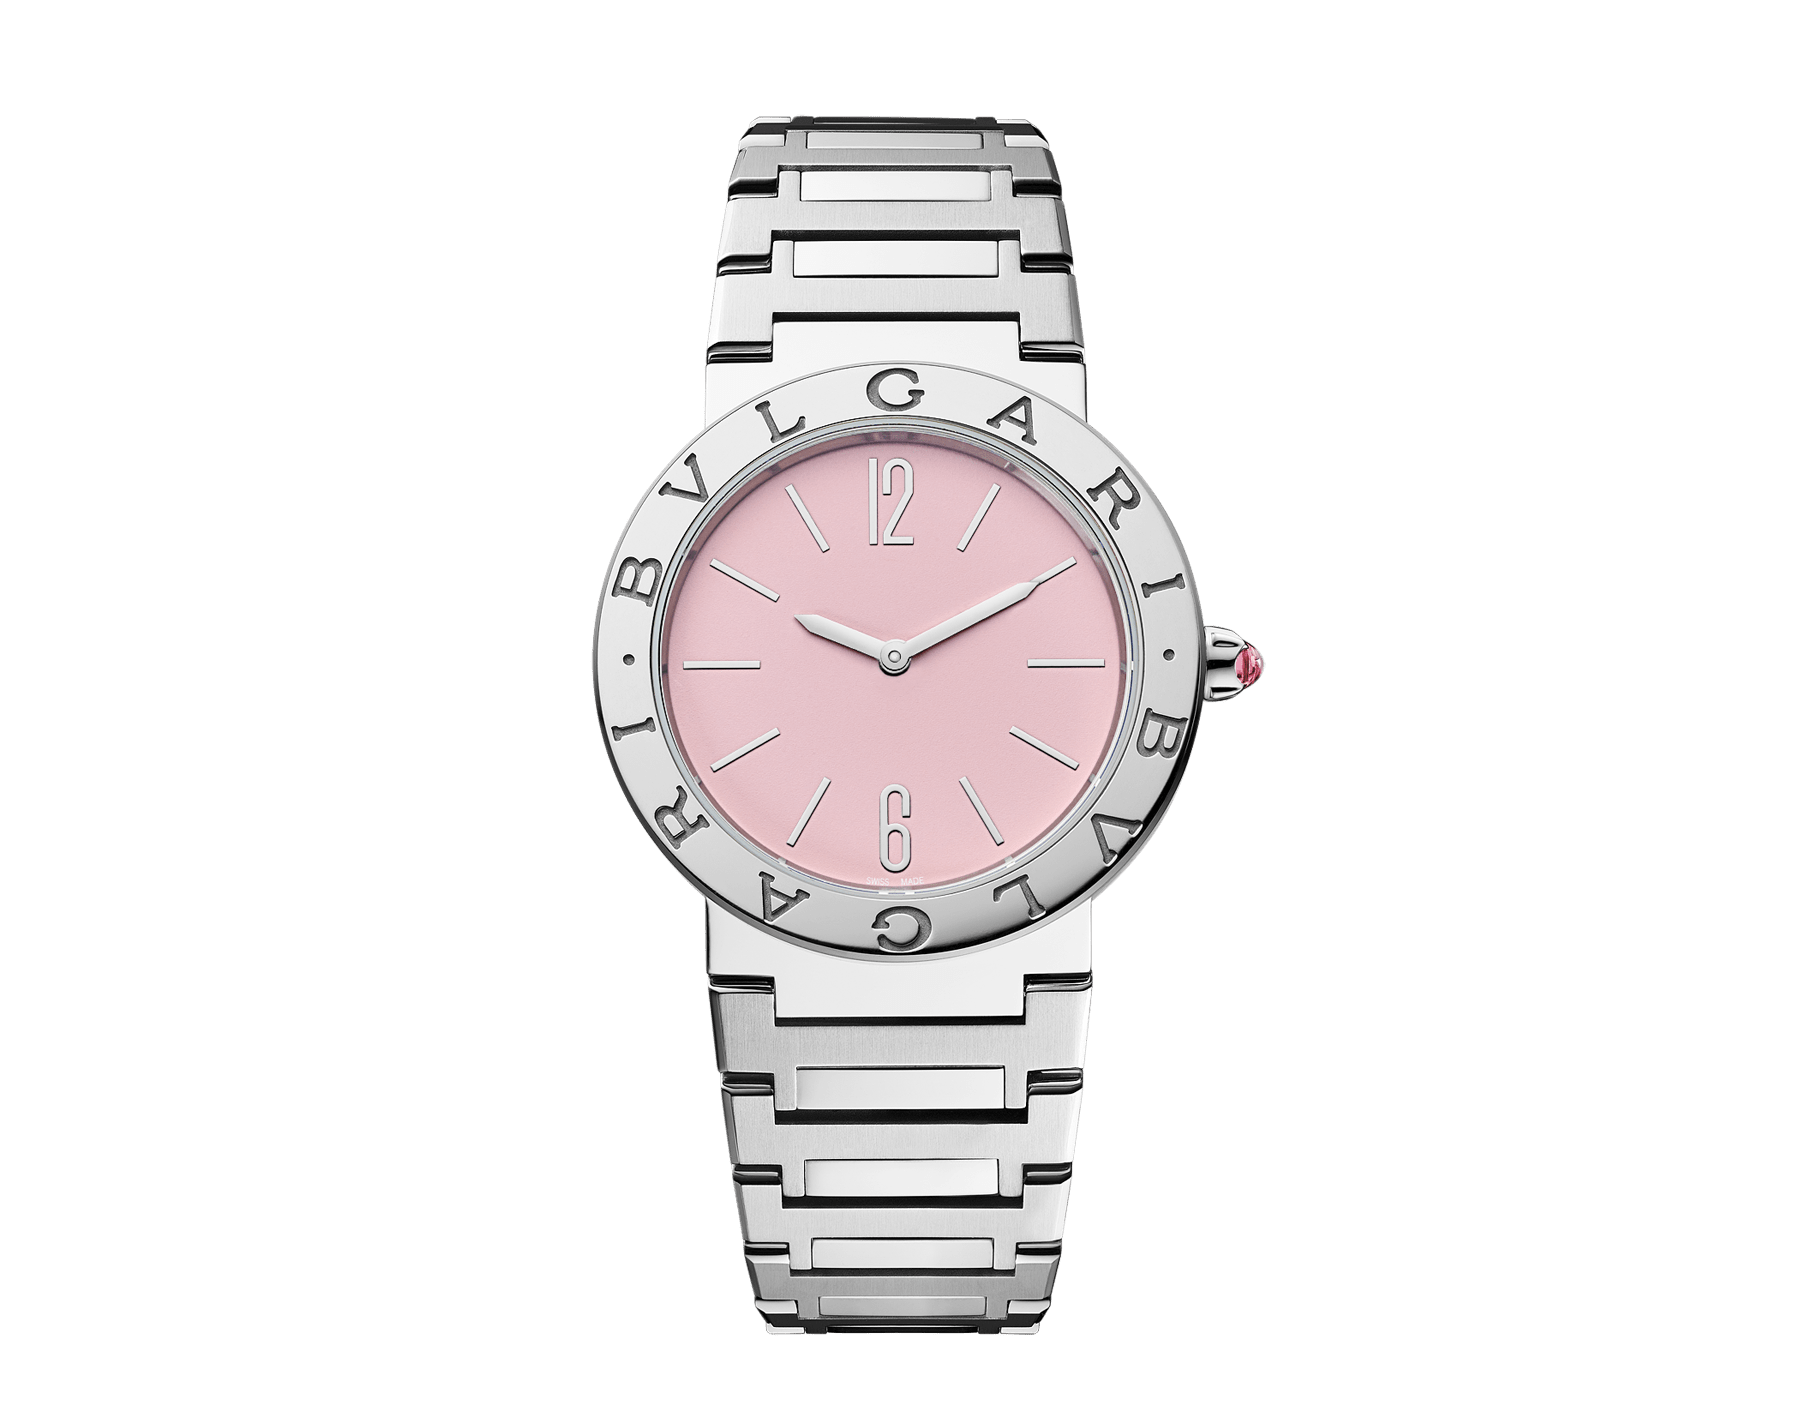 BULGARI BULGARI 腕錶，精鋼錶殼，錶圈鐫刻雙品牌標誌，拋光及緞面精鋼錶帶，粉紅色漆面錶盤。防水深度 30 公尺。全球限量 350 只。 103711 image 1